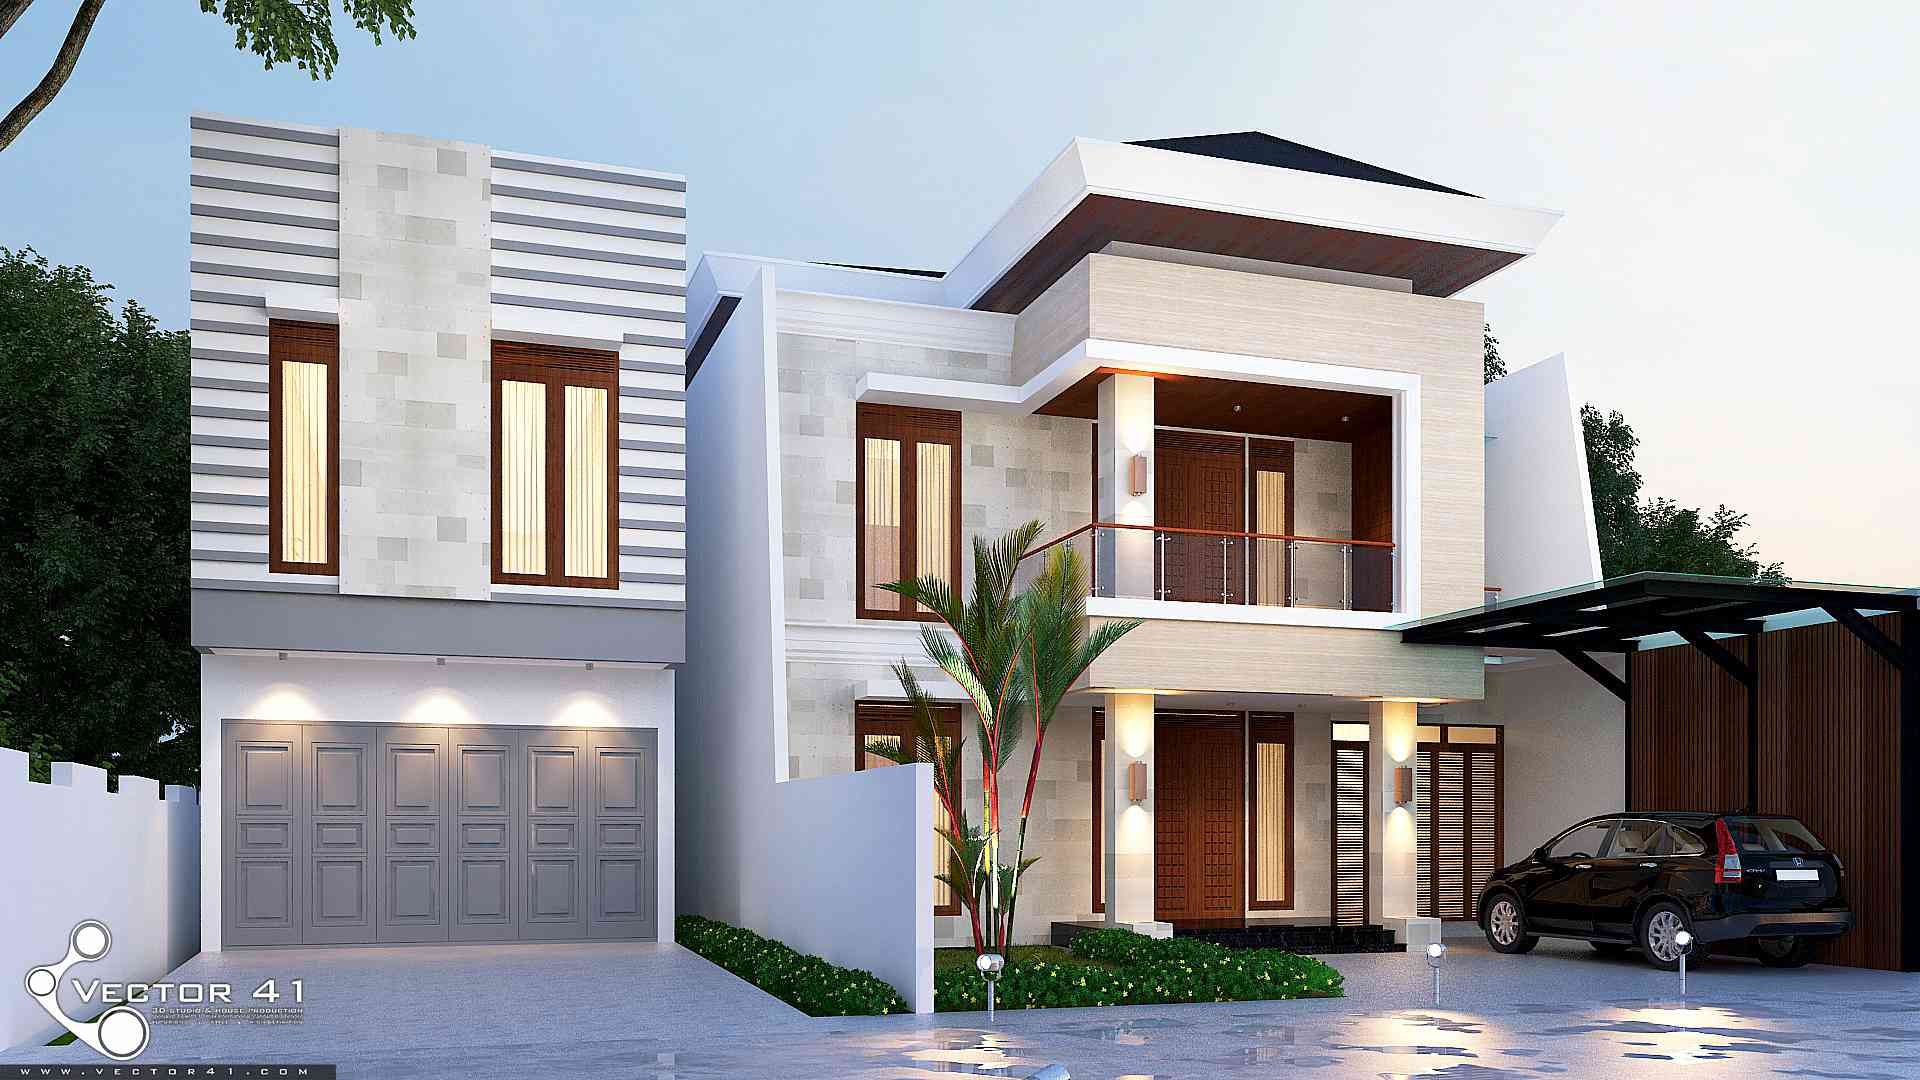 Exterior House_Medan (Mr. Andi), VECTOR41 VECTOR41 منزل جاهز للتركيب